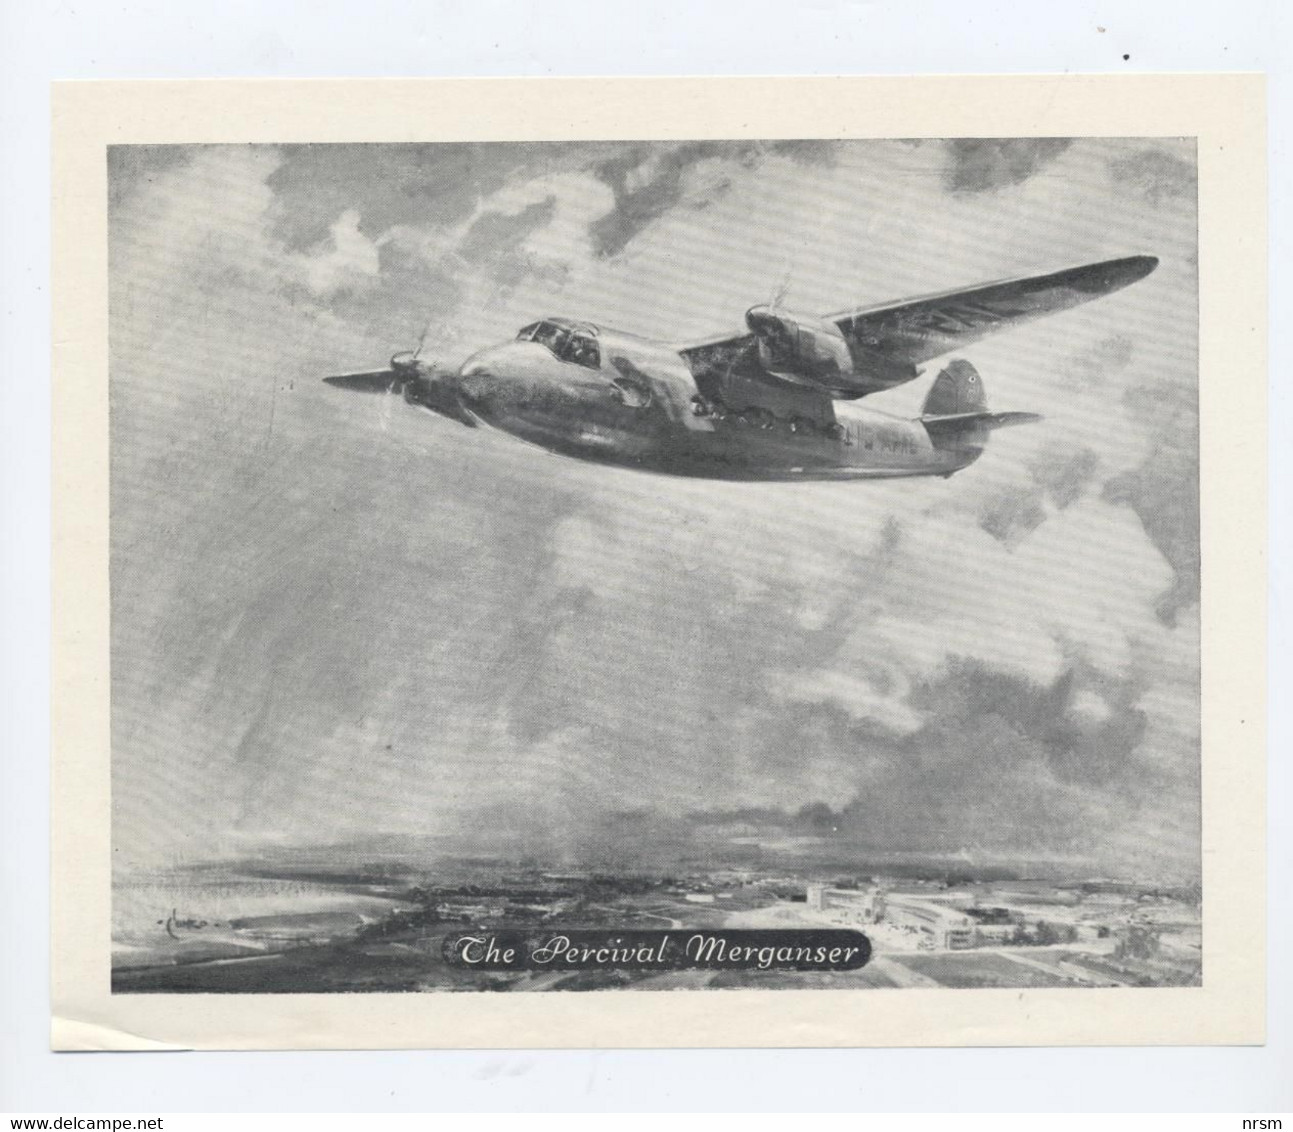 AVIATION / Avion PERCIVAL MERGANSER (TITANINE) - Publicités